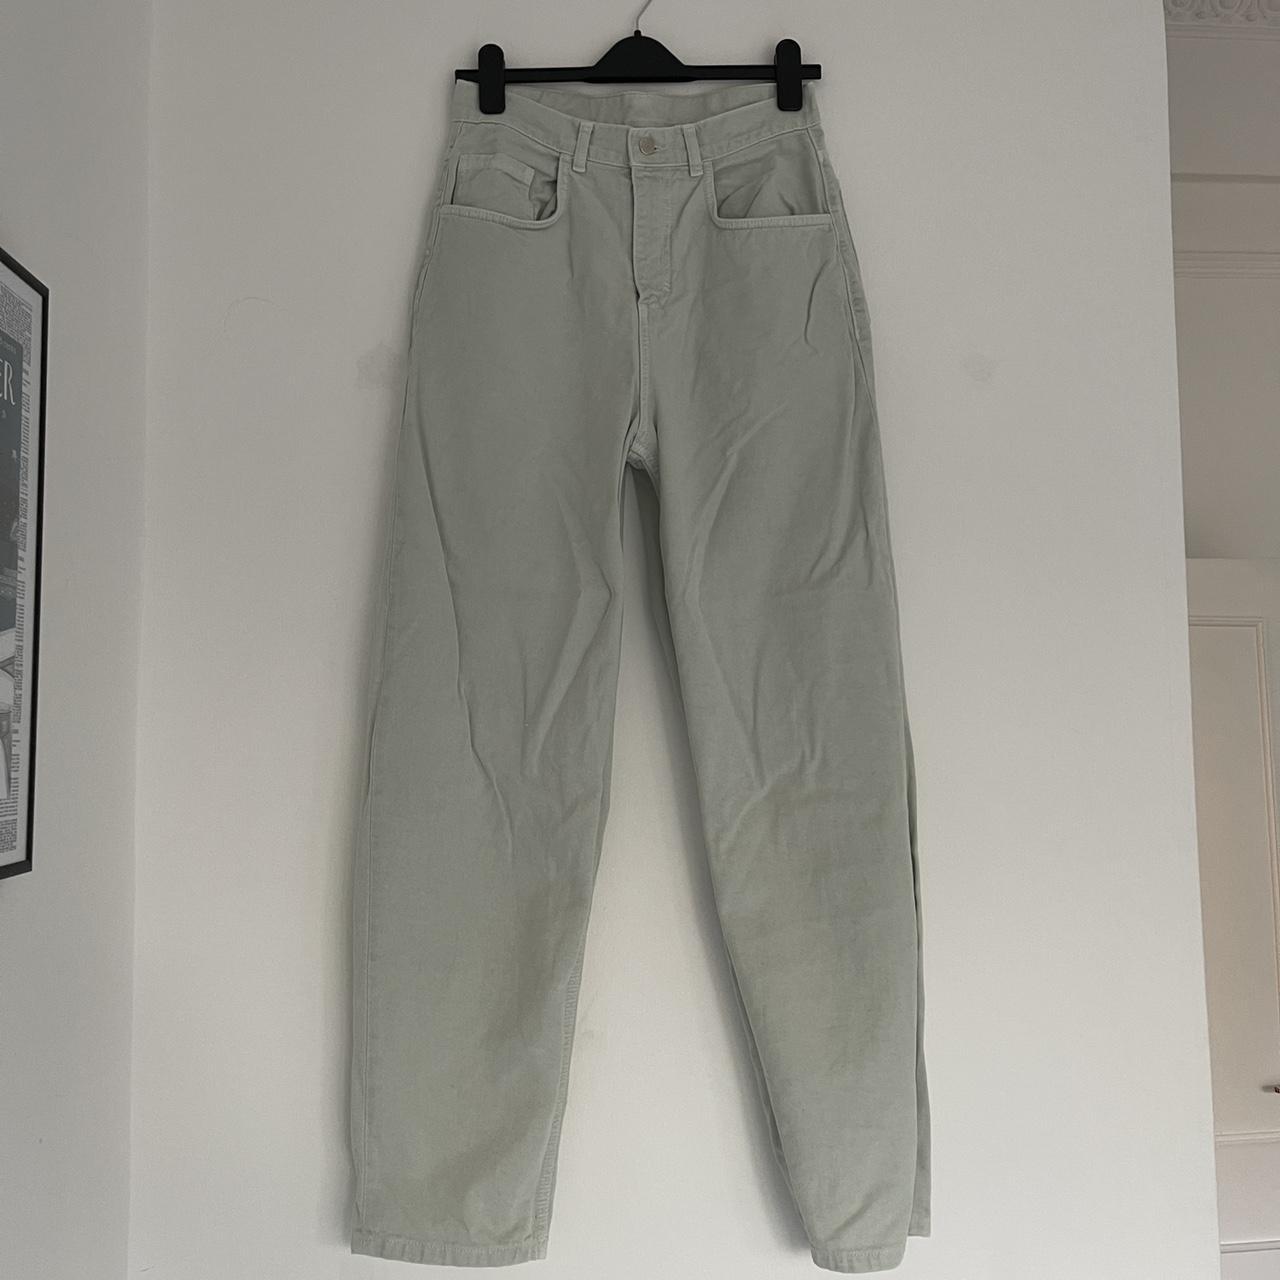 Reclaimed Vintage - Sage green wide leg denim jeans... - Depop